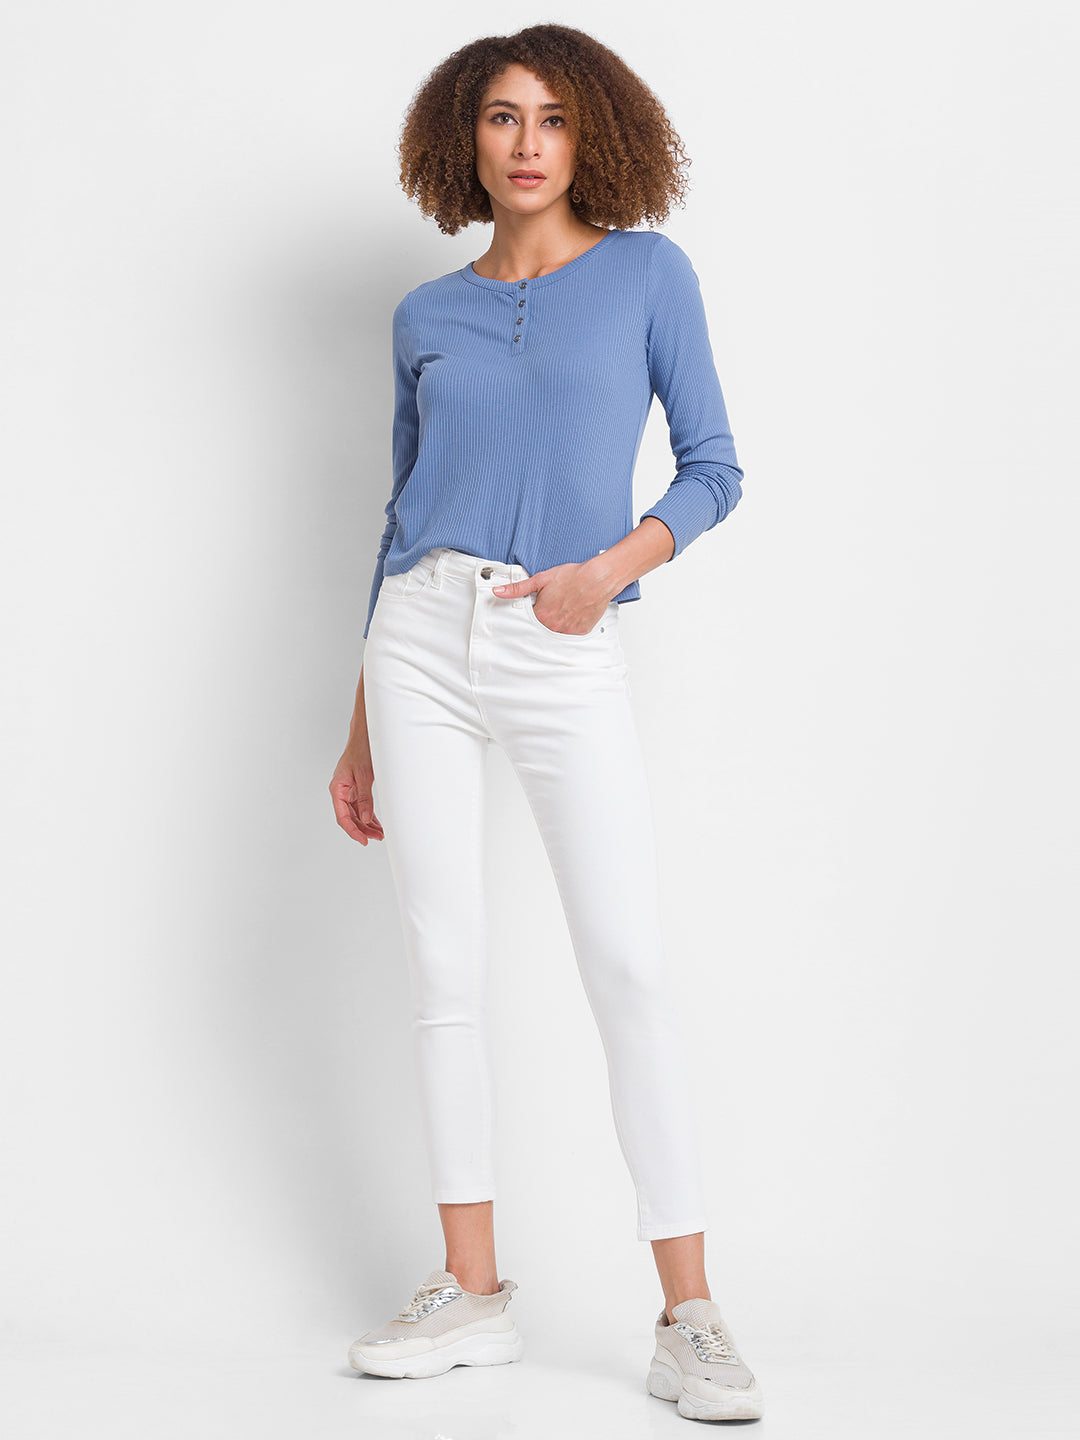 Spykar White Lycra Super Skinny Ankle Length Jeans For Women (Alexa)